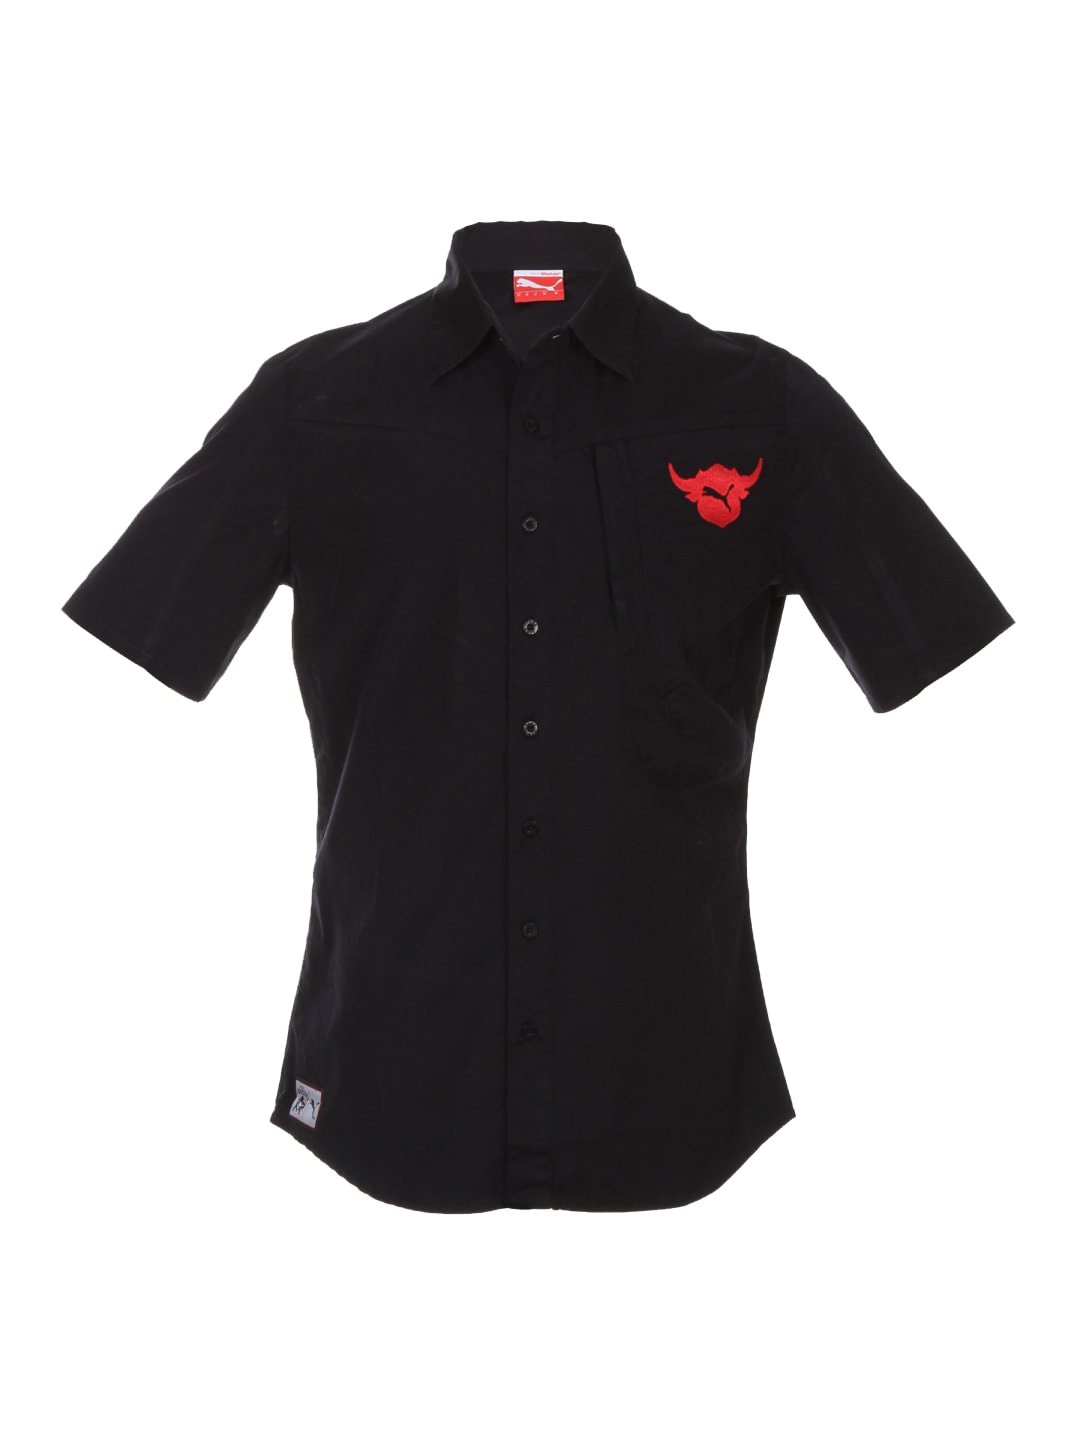 Puma Men Deccan Chargers Woven Black Shirt